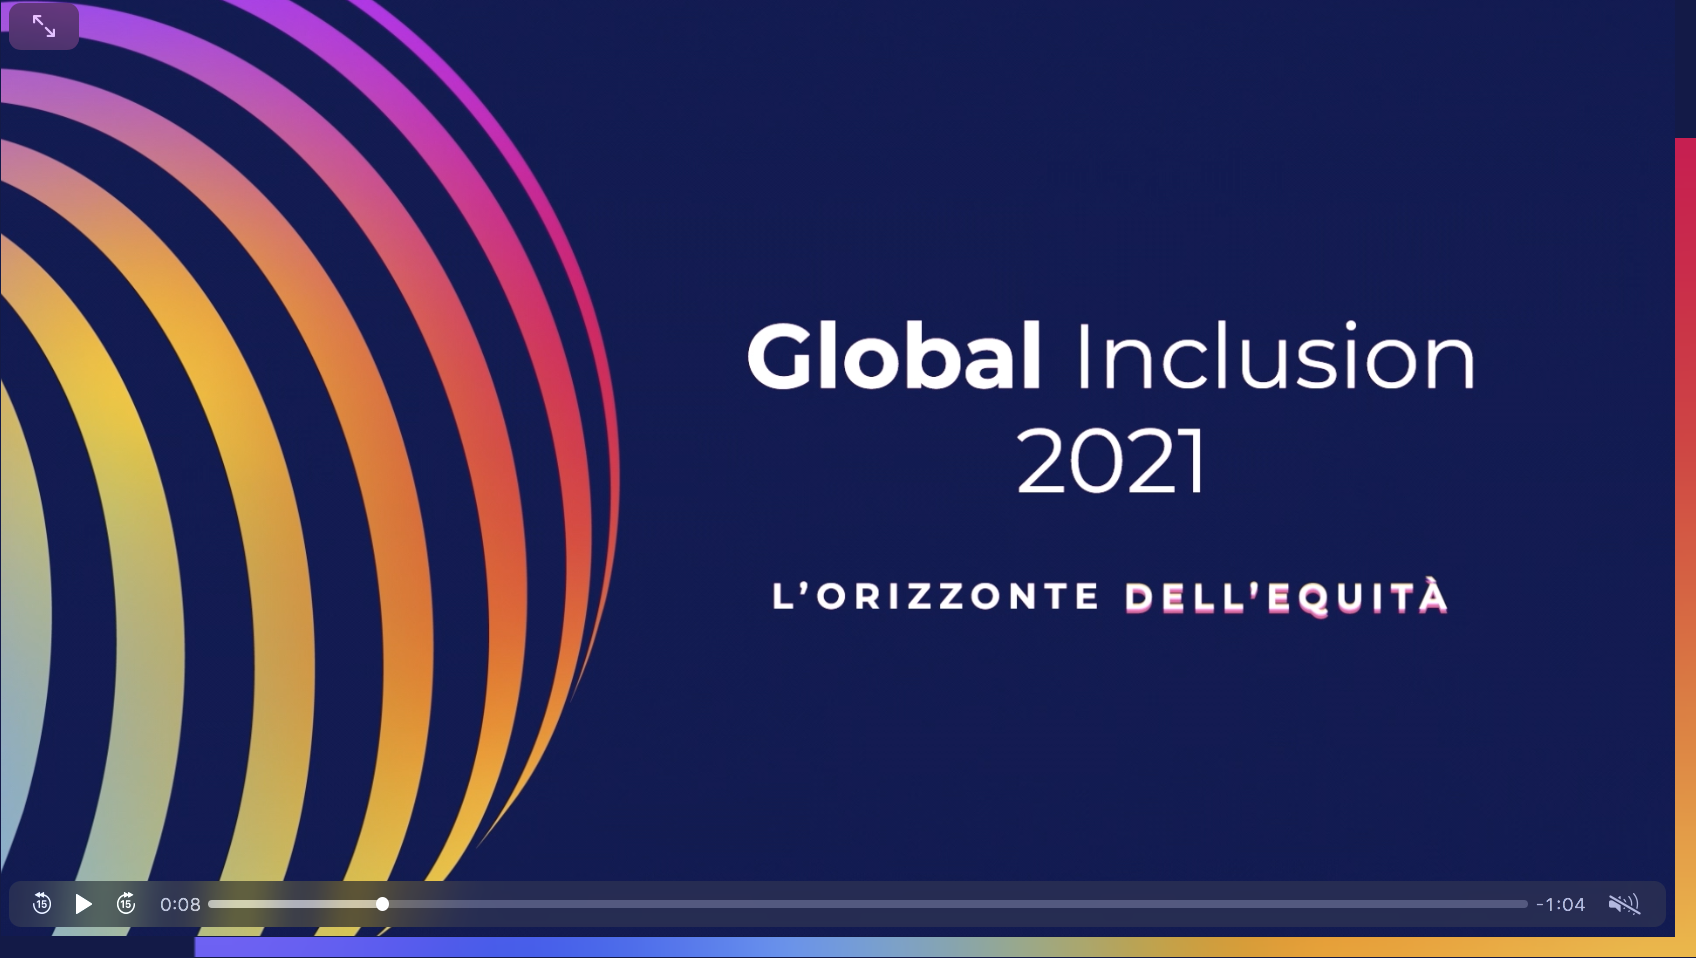 Il Sole24 Ore: il 29 evento di chiusura “Global Inclusion” con Messa, Bonino e Zamagni